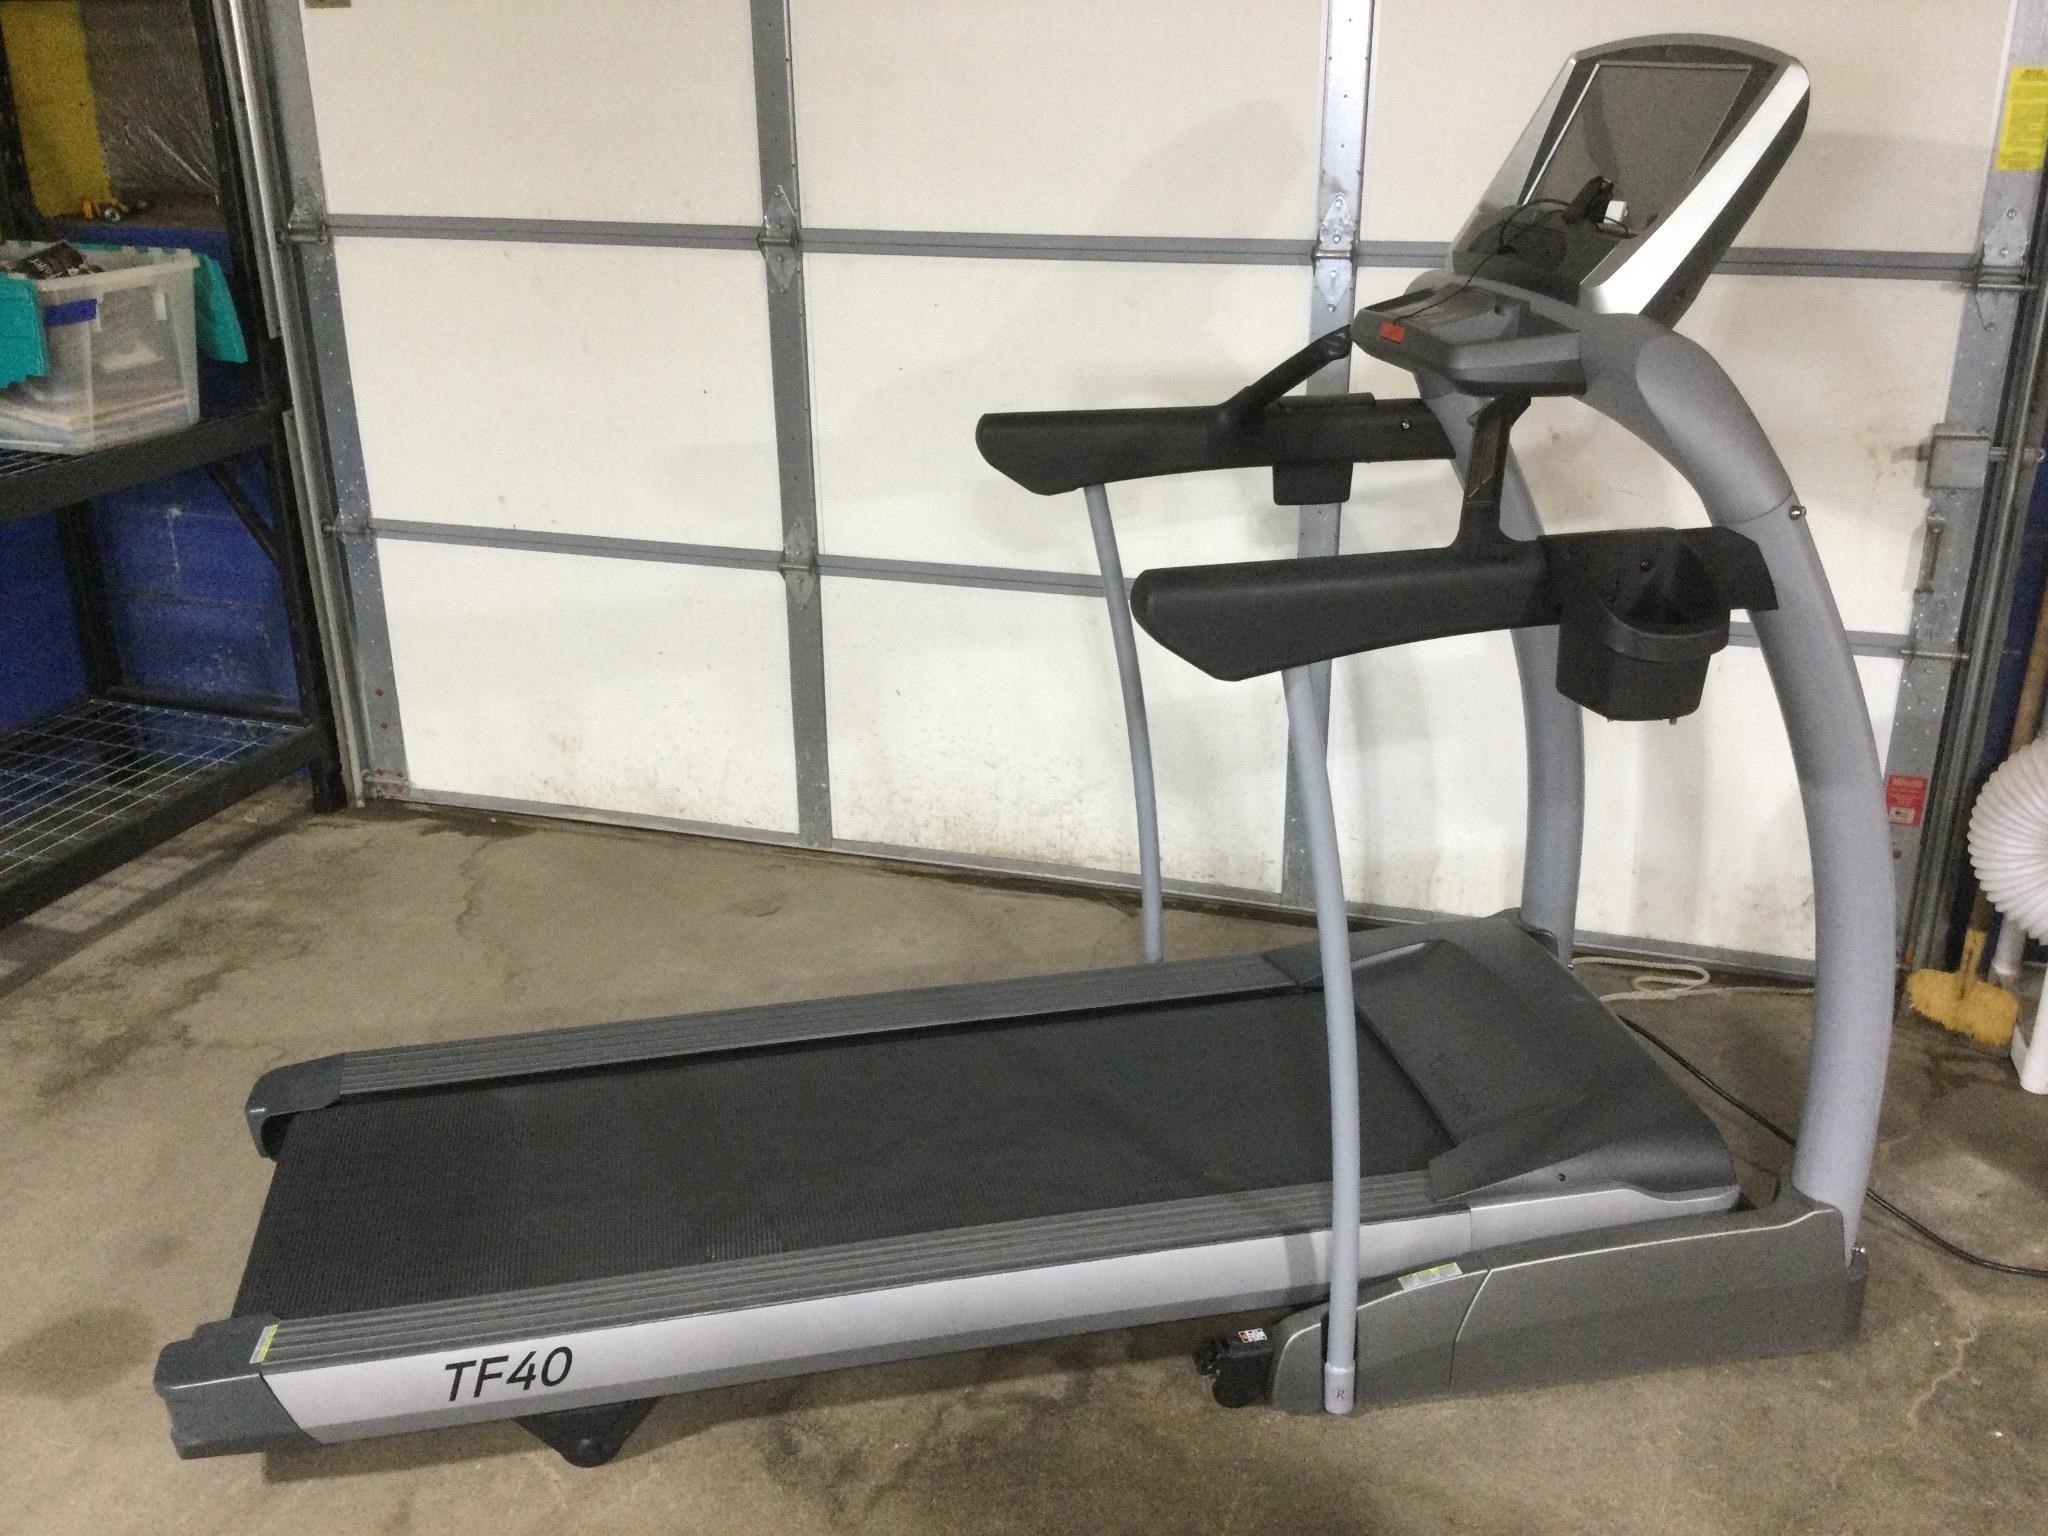 TF40 Folding Treadmill, Vision Fitness